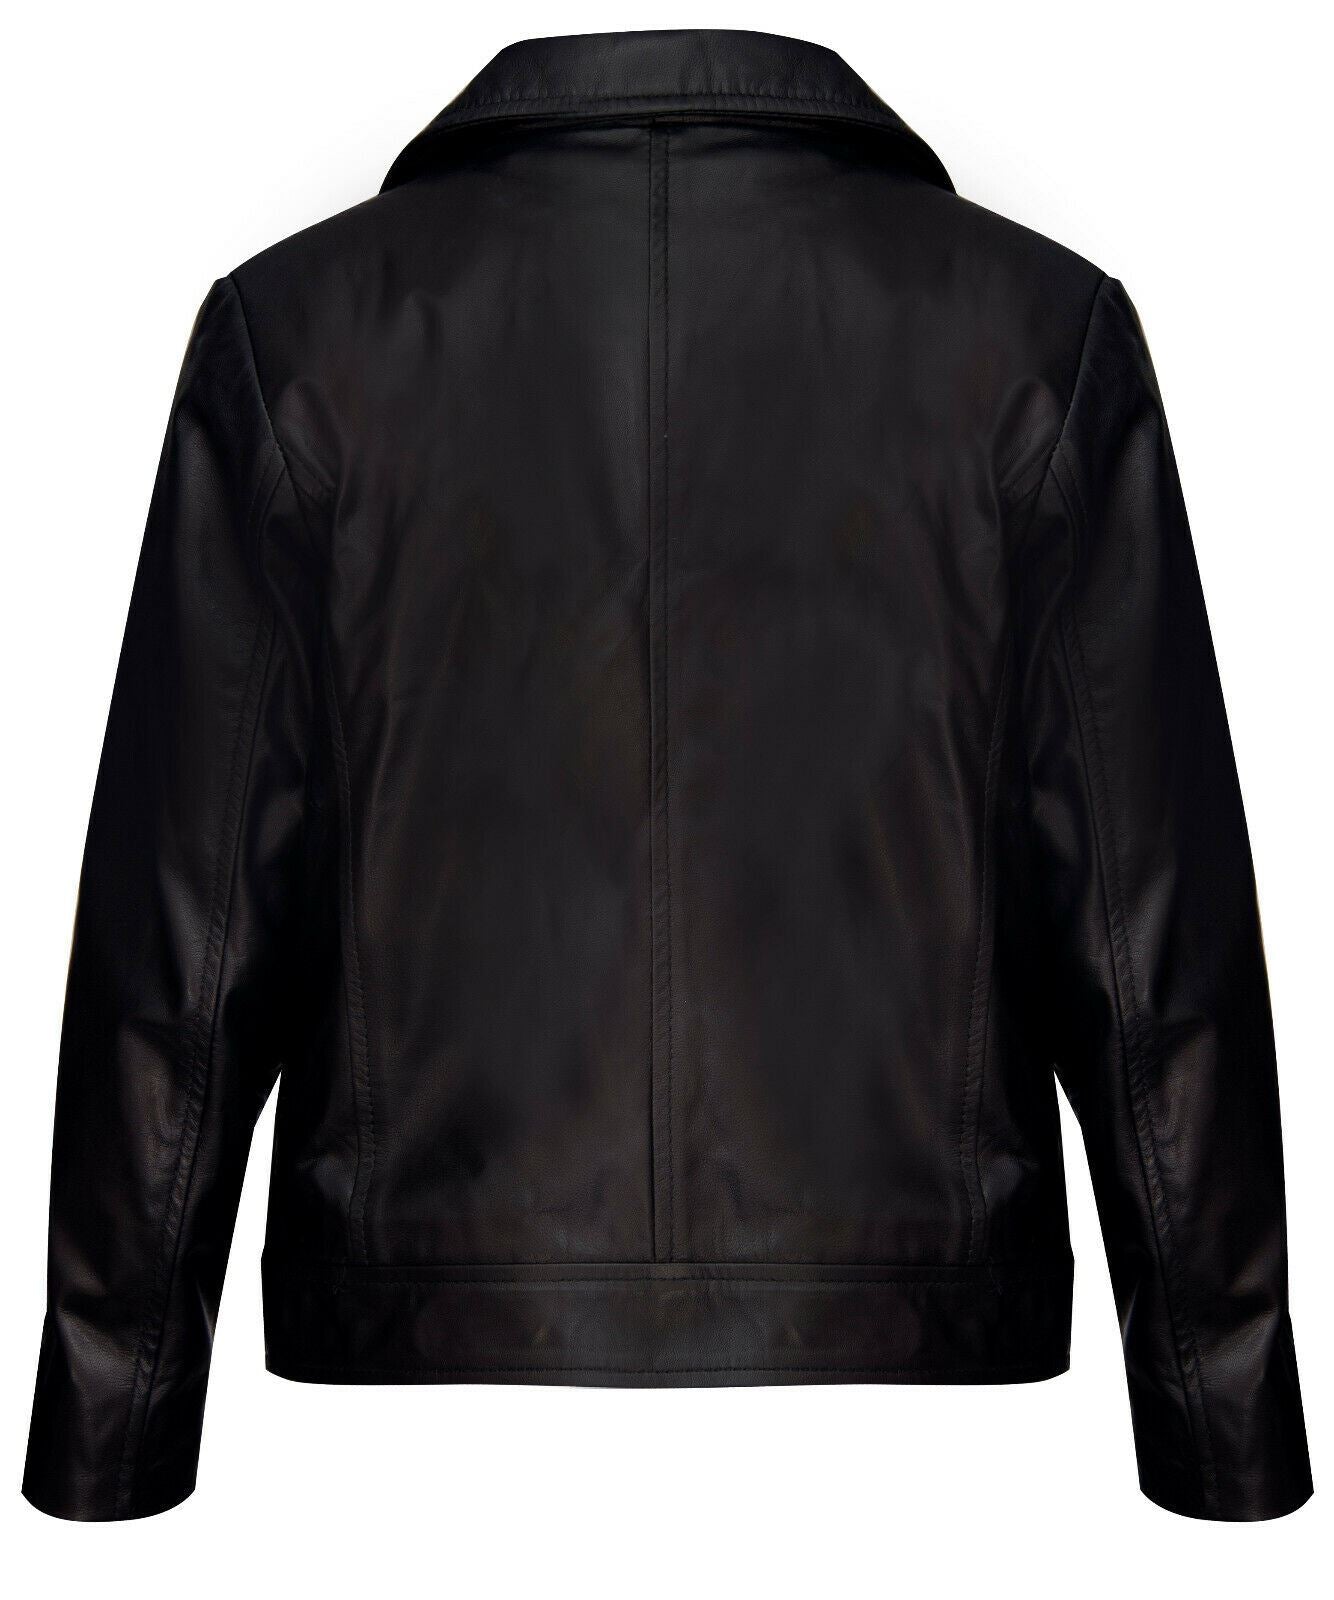 Kids Jackets Designer's Girls 100% Leather Jacket Zip Up Biker Coats (1-13Years)